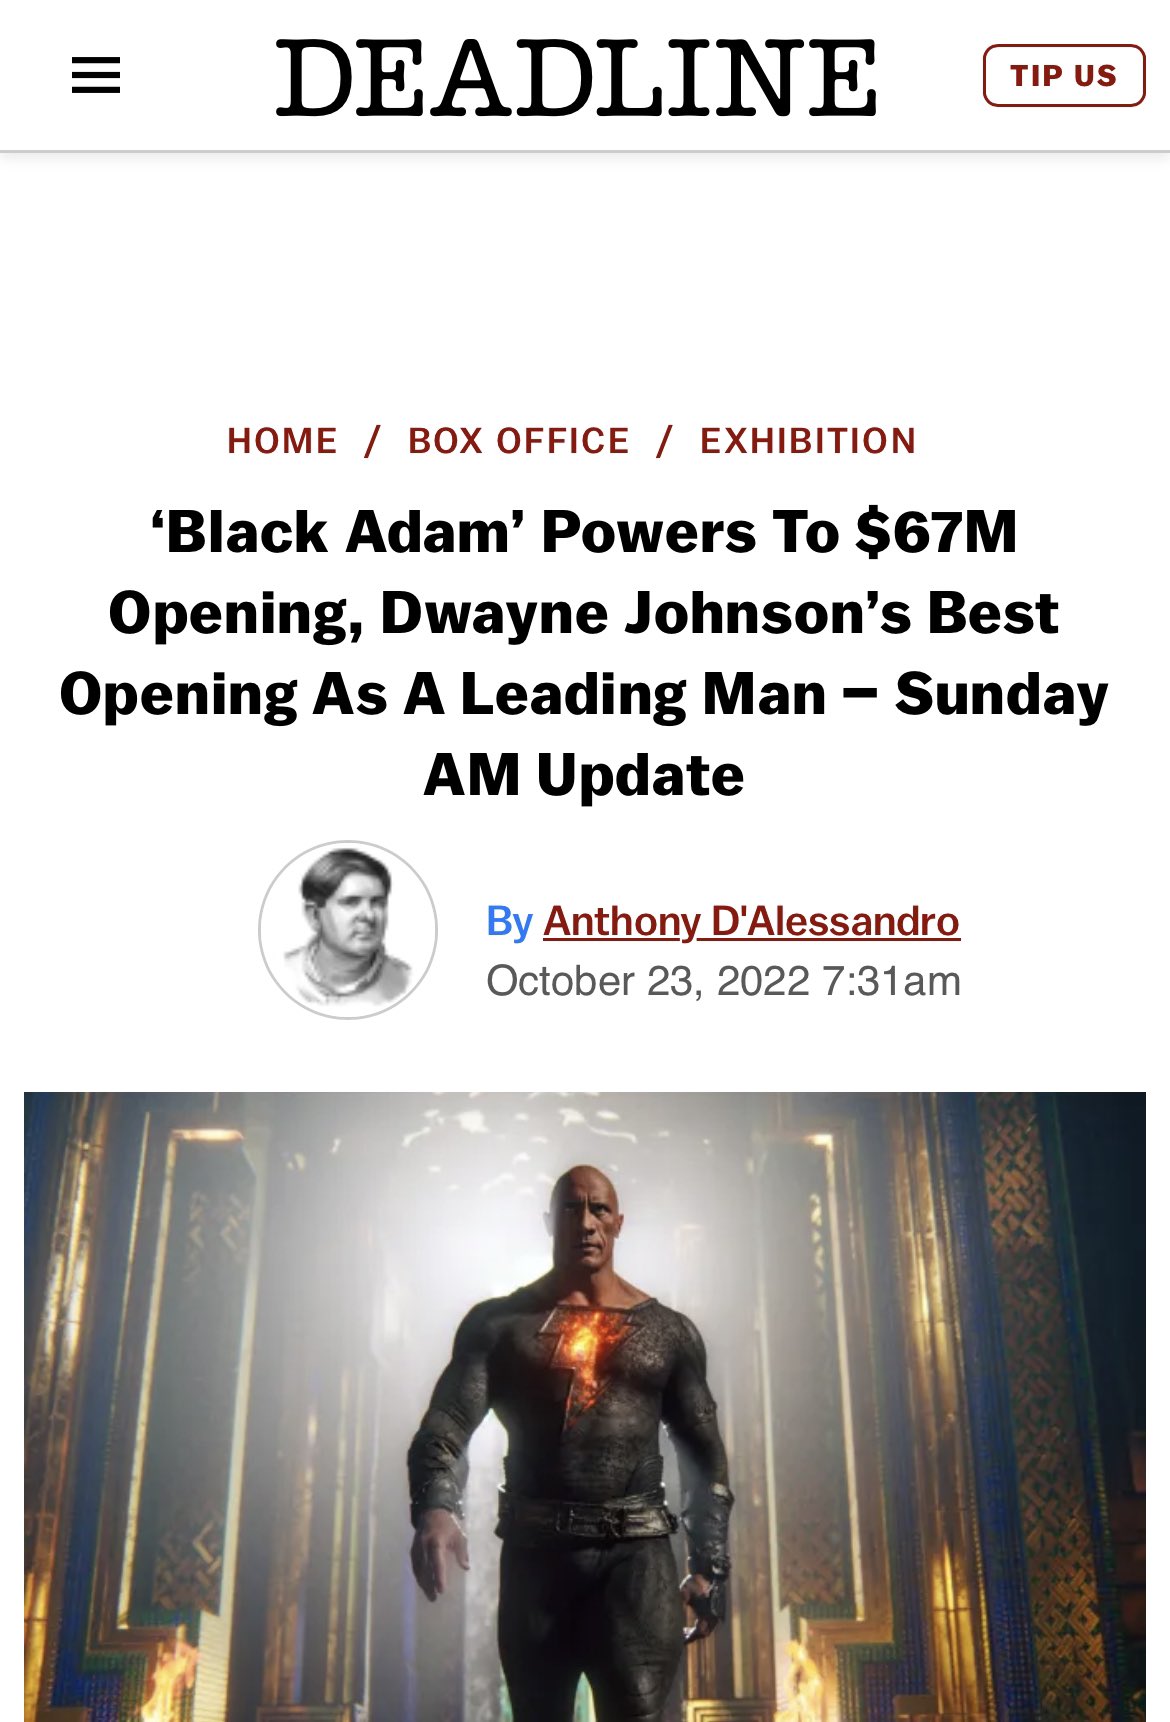 Black Adam debuts at No. 1 at the box office